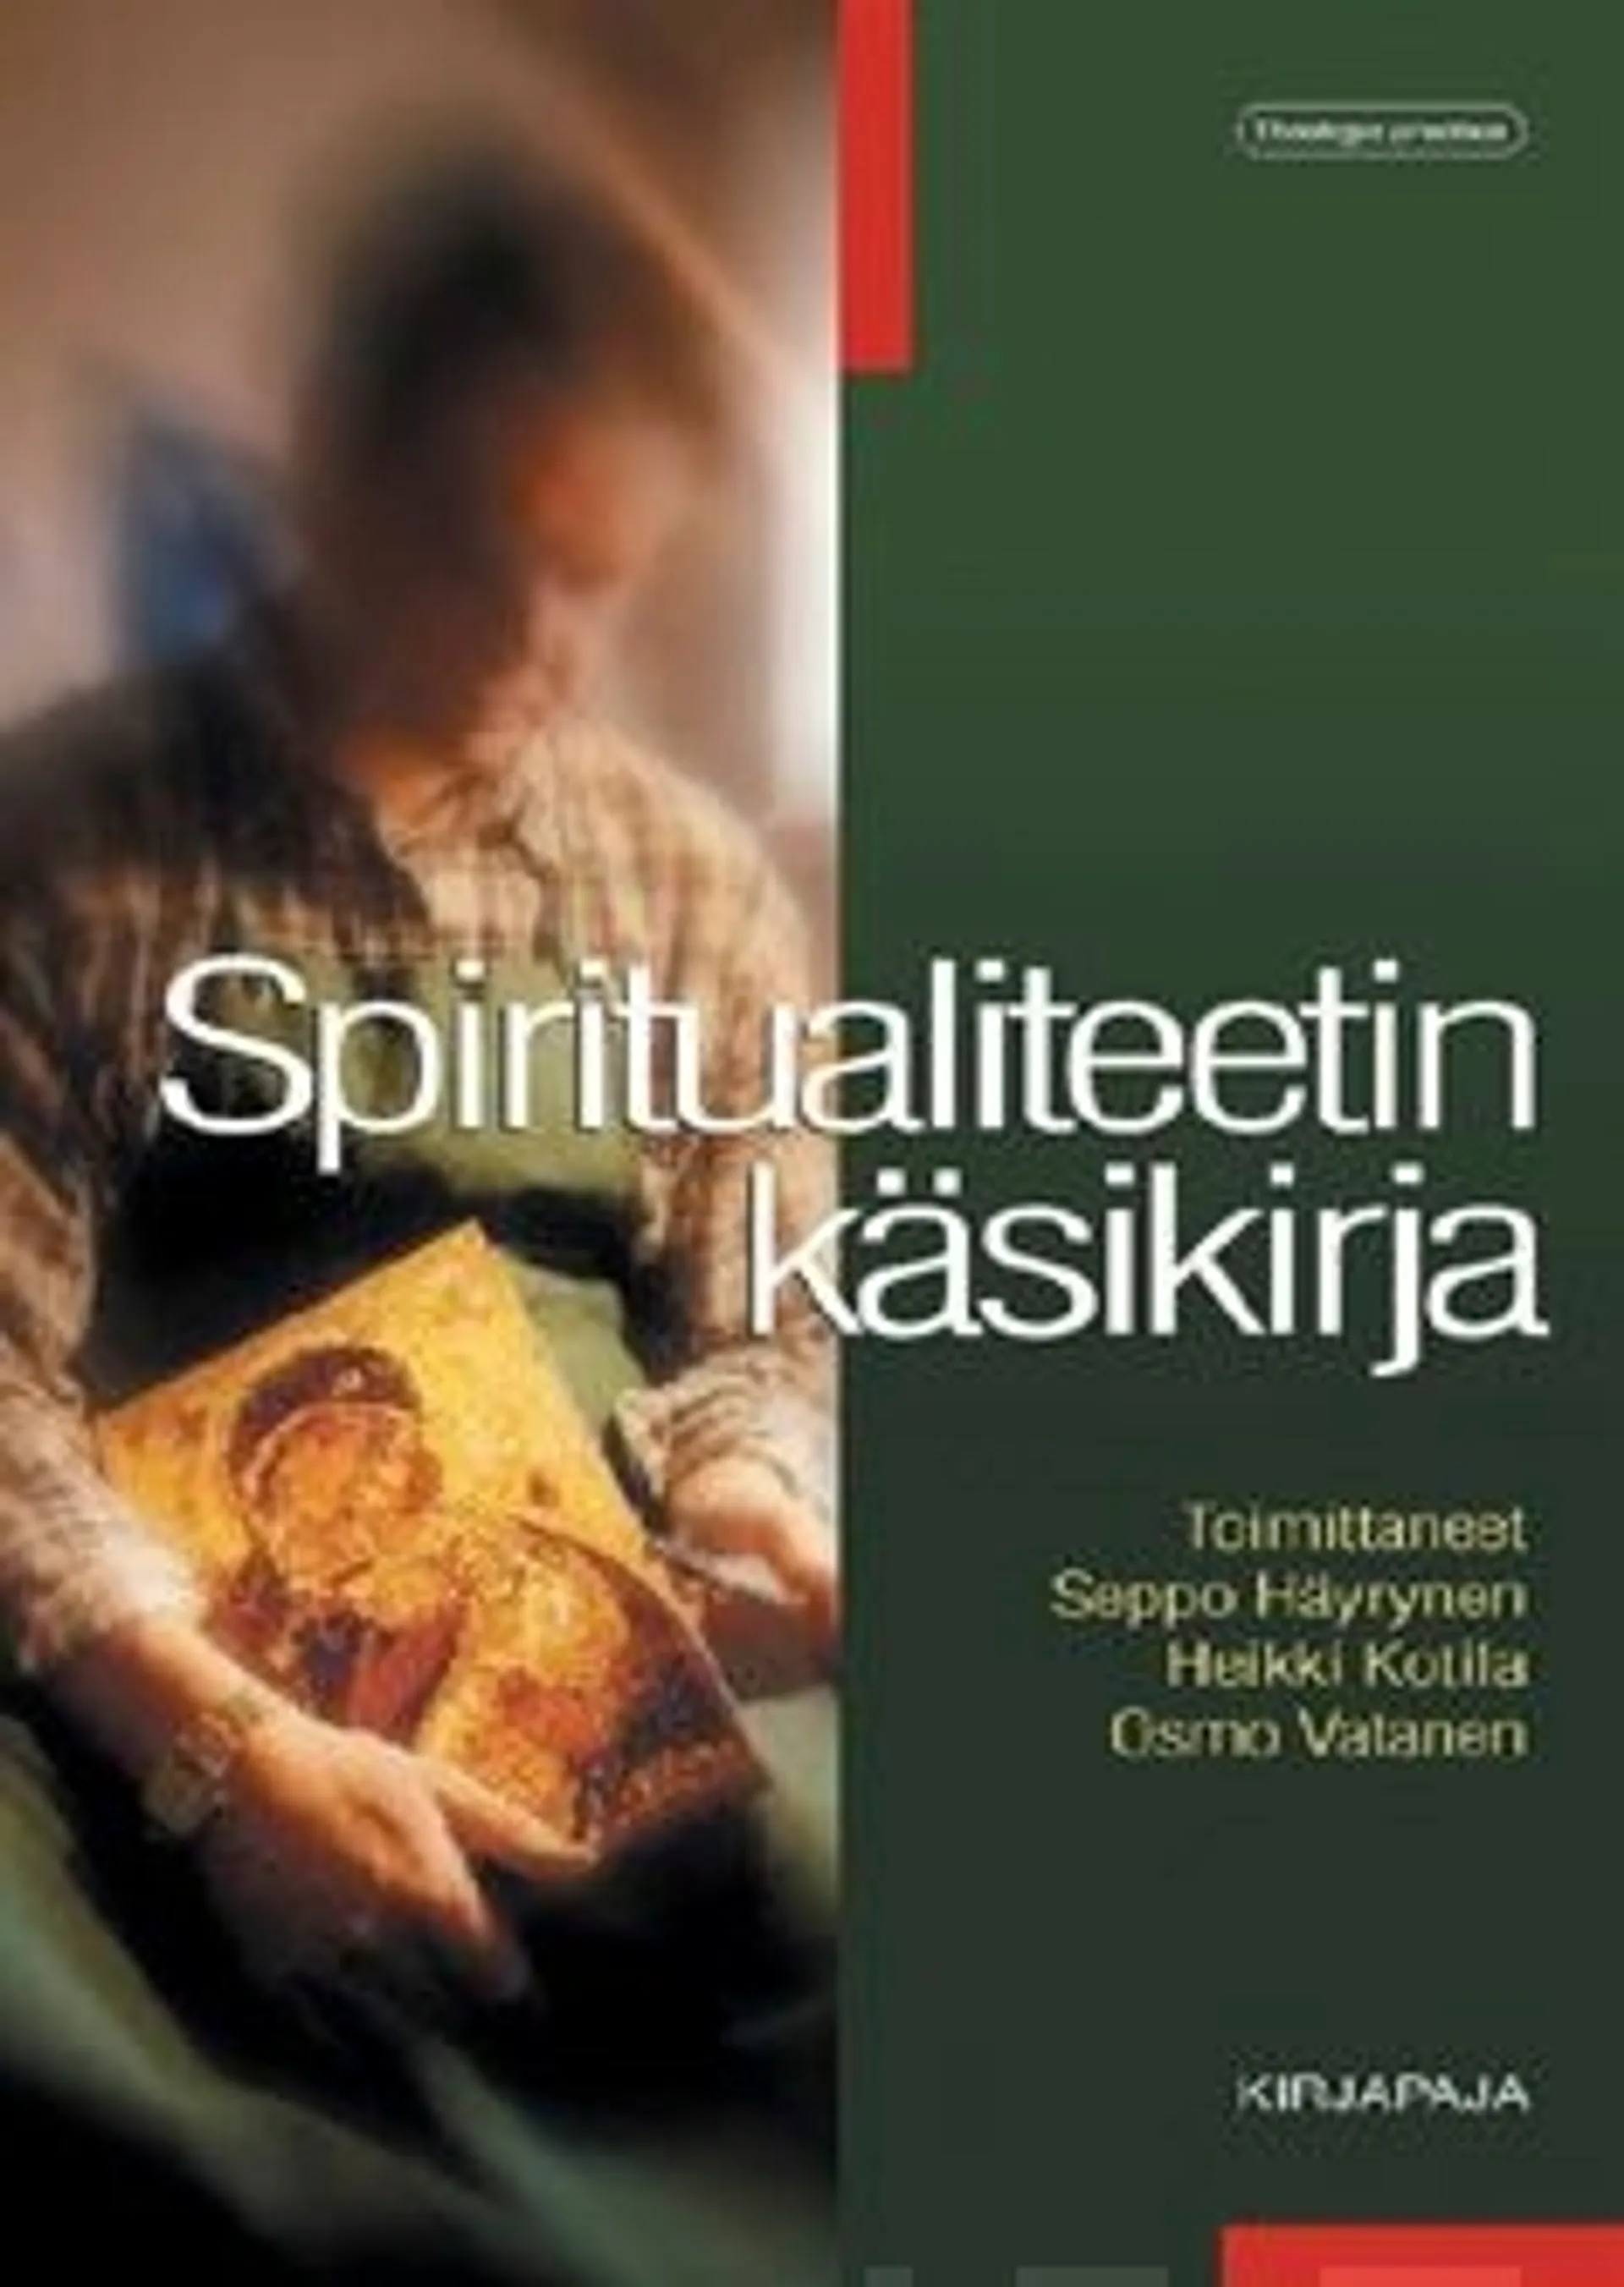 Spiritualiteetin käsikirja